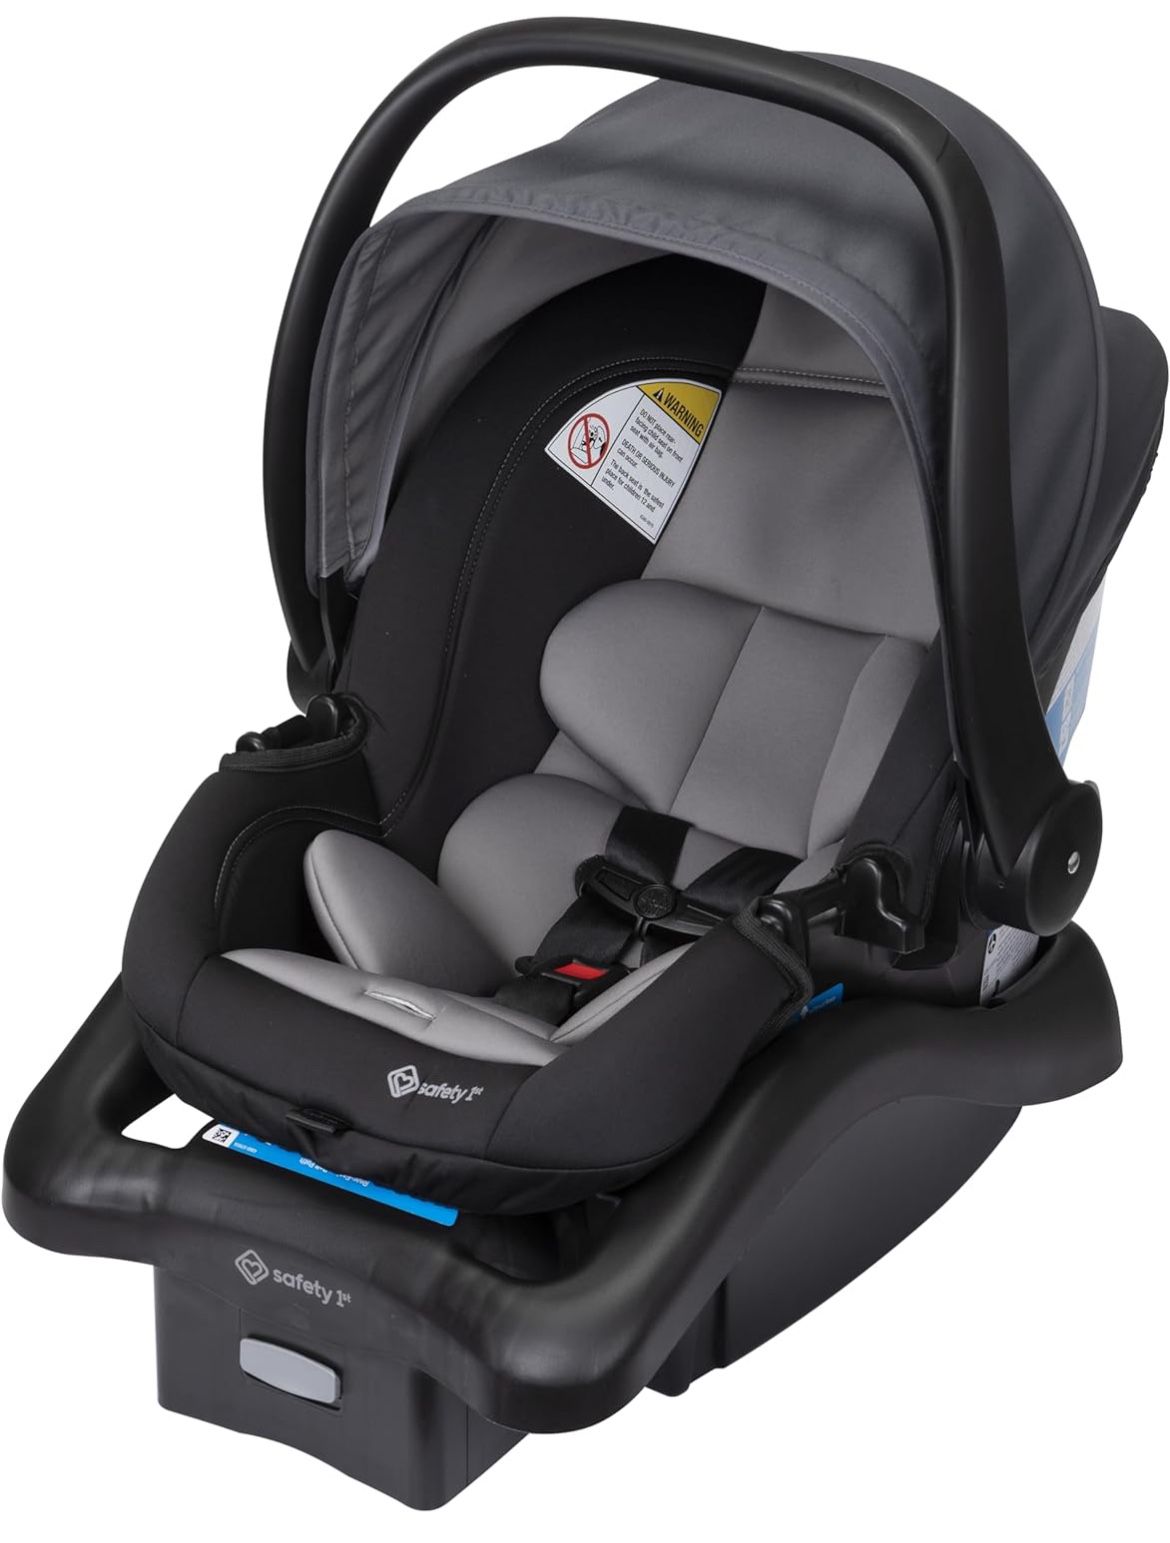 Safety 1st onBoard 35 LT Adjustable Infant Car Seat Base